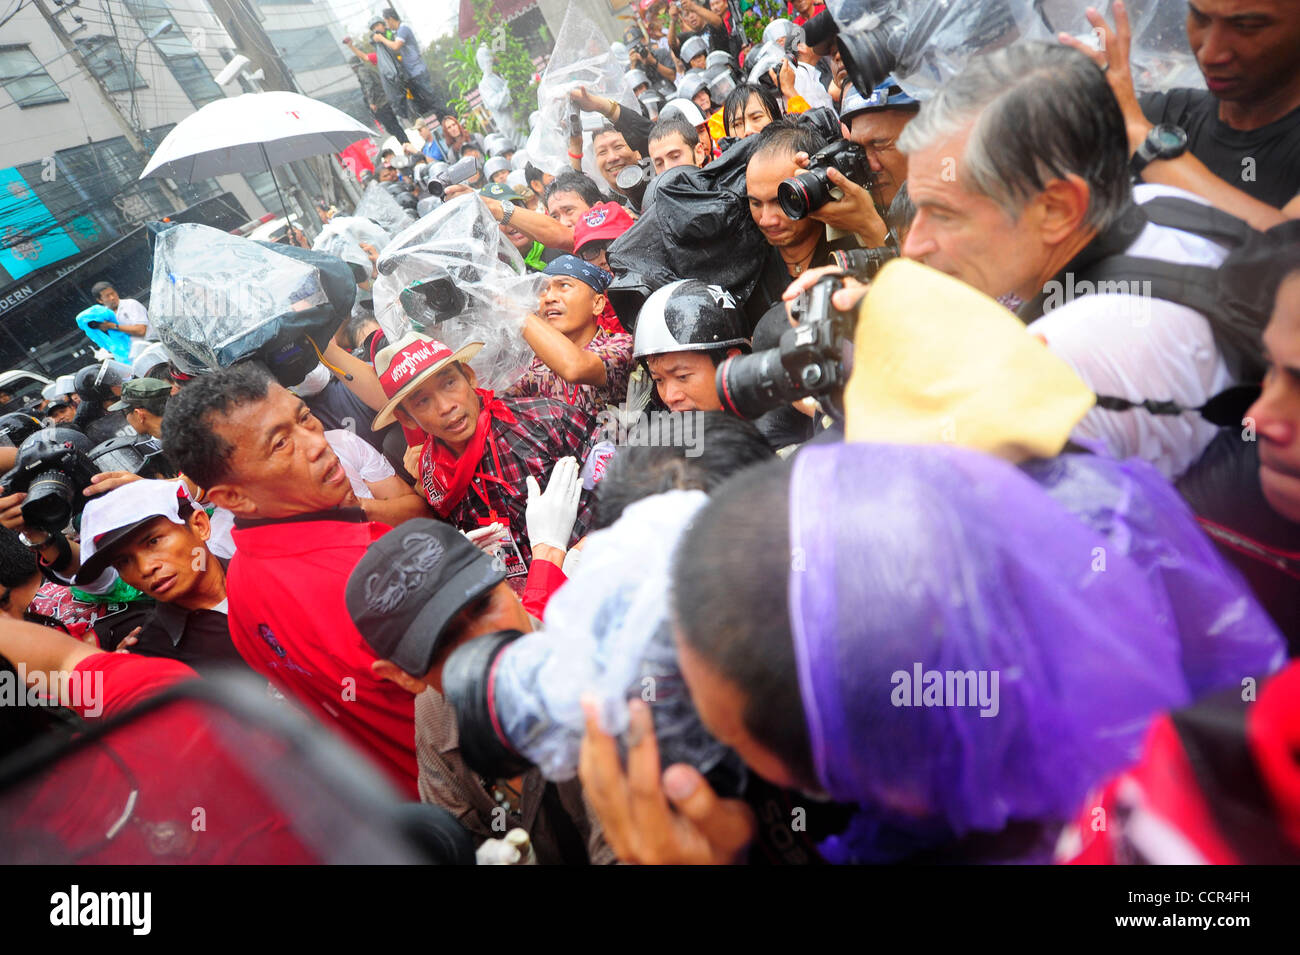 Anhänger der ehemalige thailändische Premierminister Thanksin Shinawatra vor thailändische Premierminister Abhisit Vejjajiva Haus versuchen, sich über Polizei, menschliches Blut im Haus des Premierministers zu gießen. United Front für Demokratie gegen Diktatur aka Red Shirts vom ganzen Land demandin sammelt Stockfoto